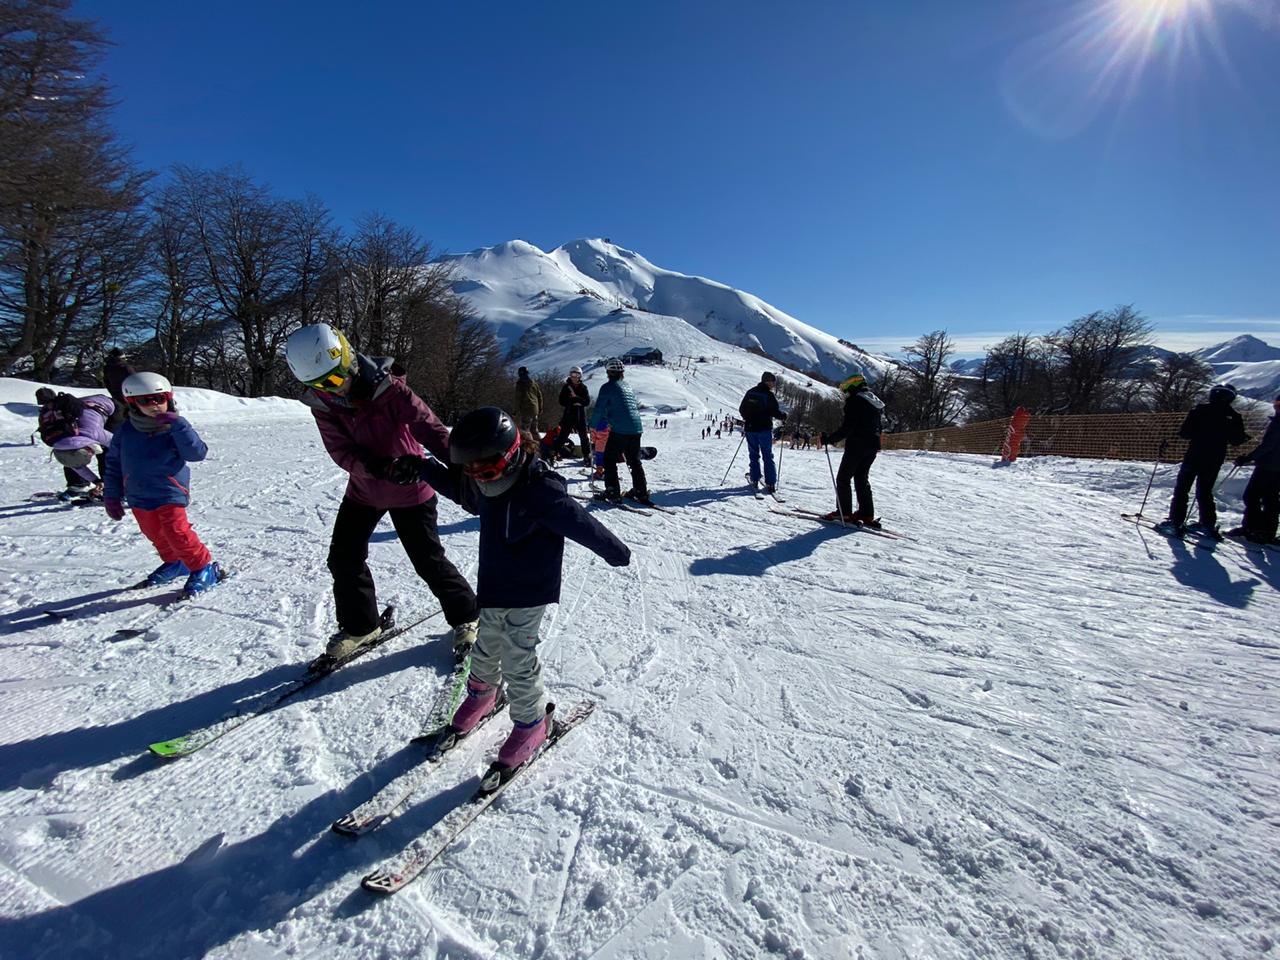 El cerro Bayo, Caviahue, Chapelco, y Batea Mahuida son las grandes atracciones para los esquiadores. Foto: gentileza Cerro Bayo